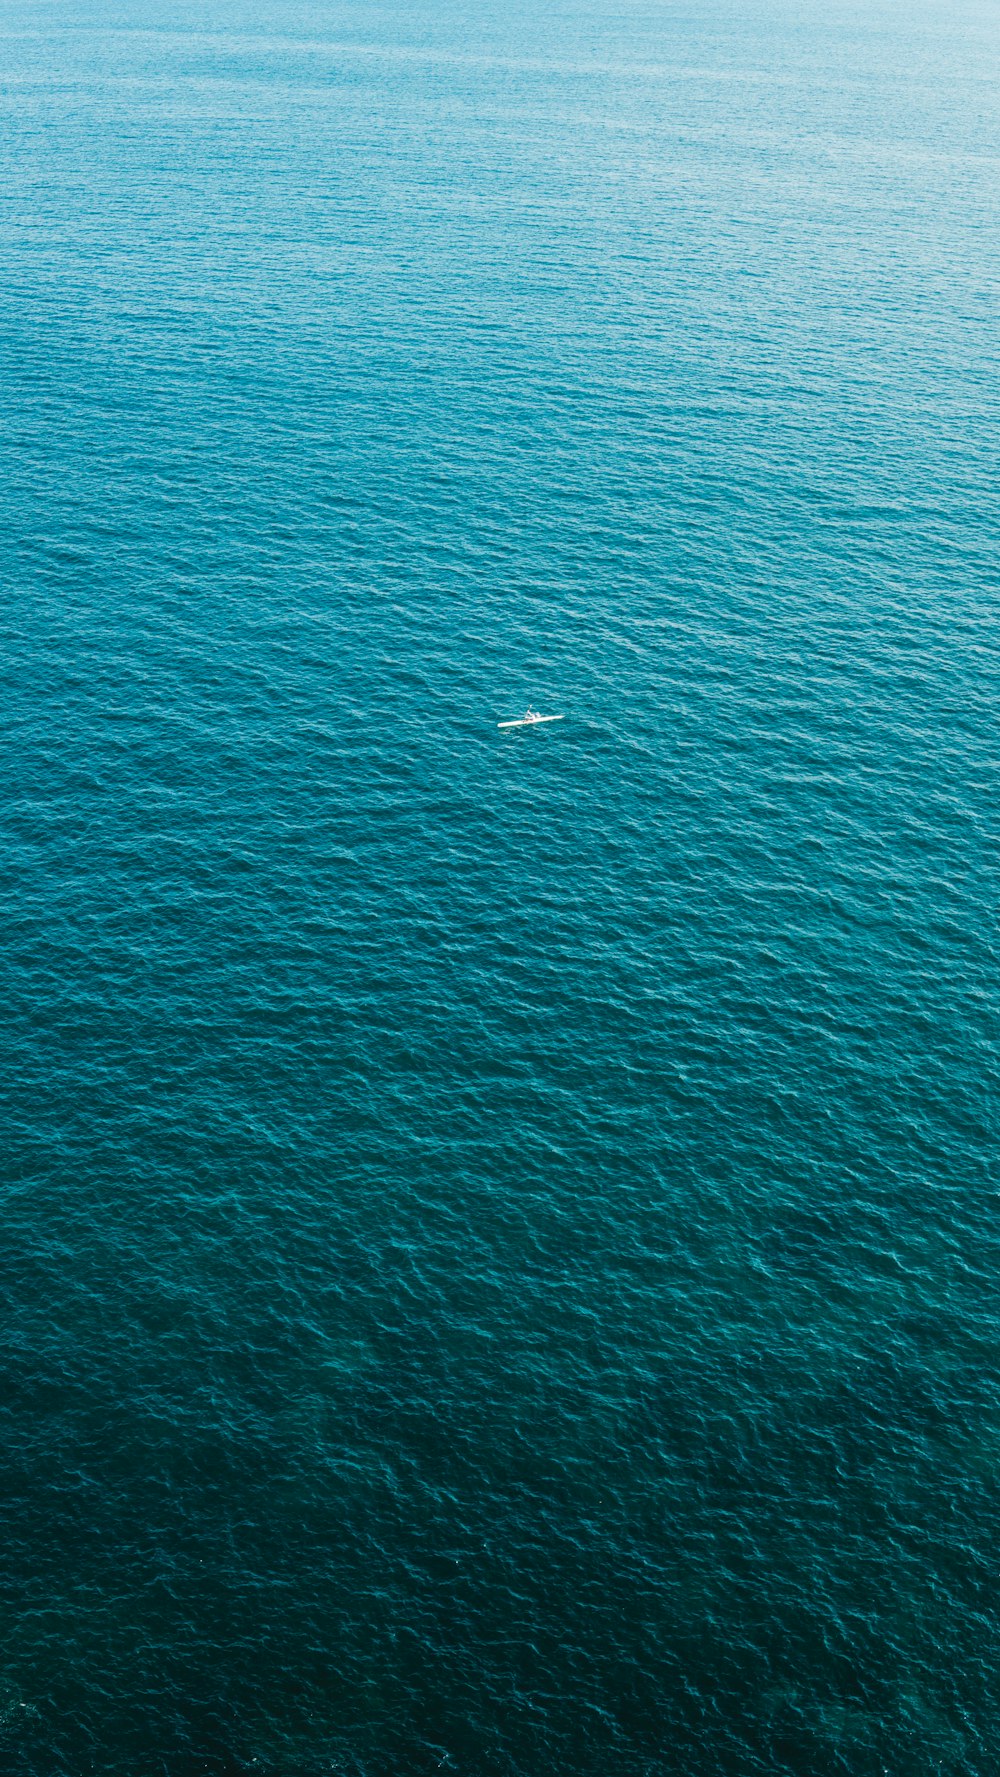 white boat in blue sea